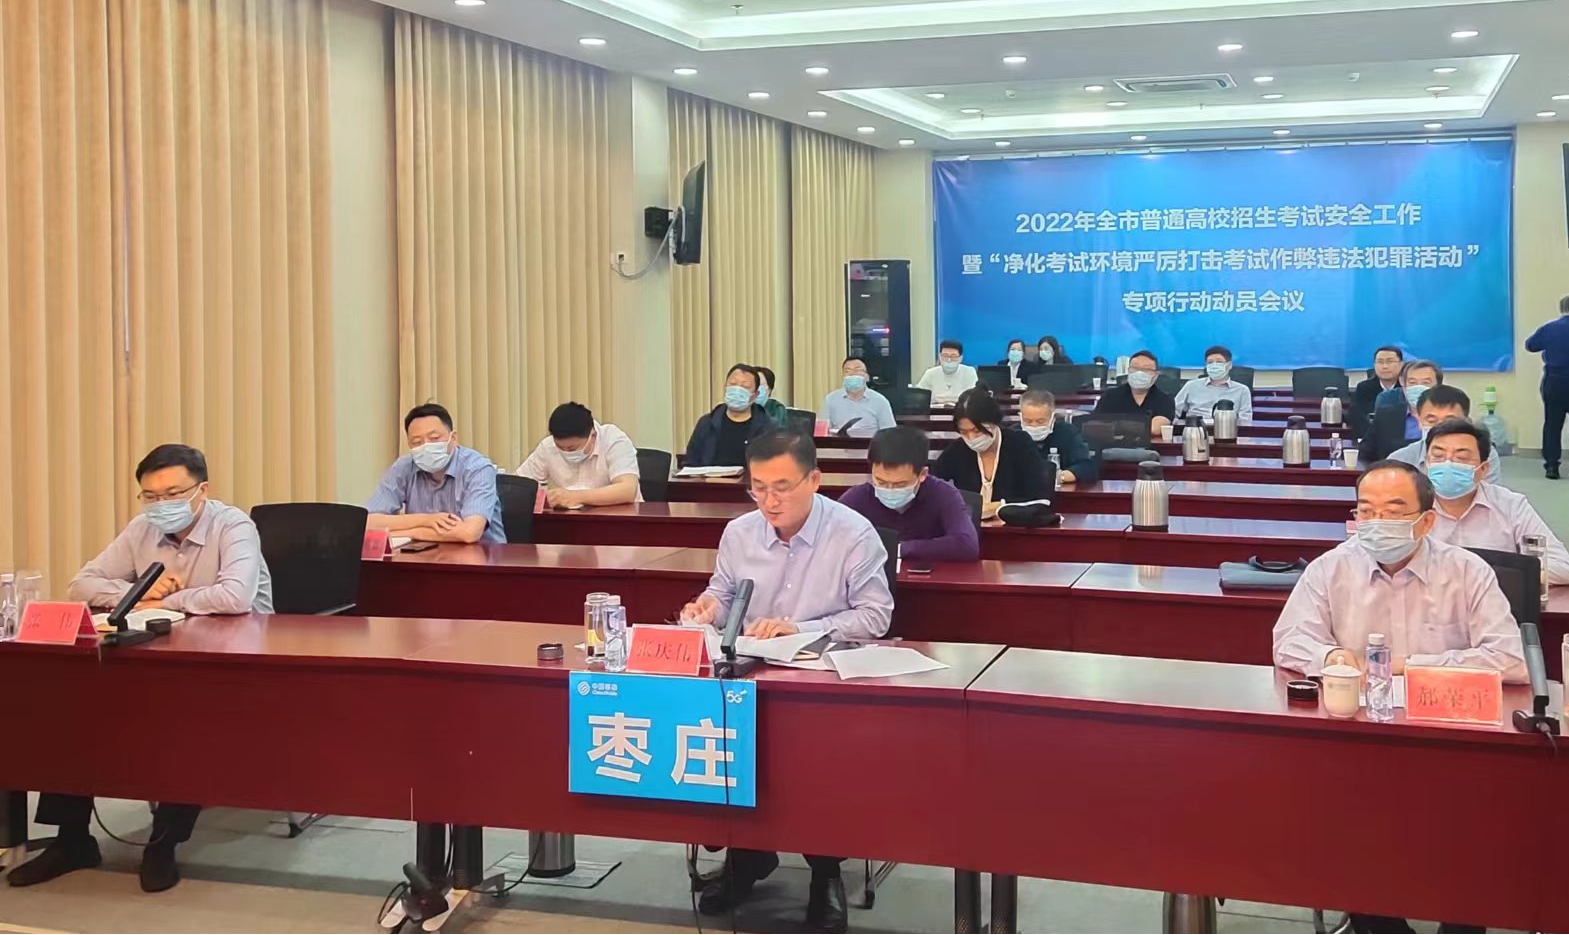 2022年枣庄市普通高校招生考试安全工作电视会议召开